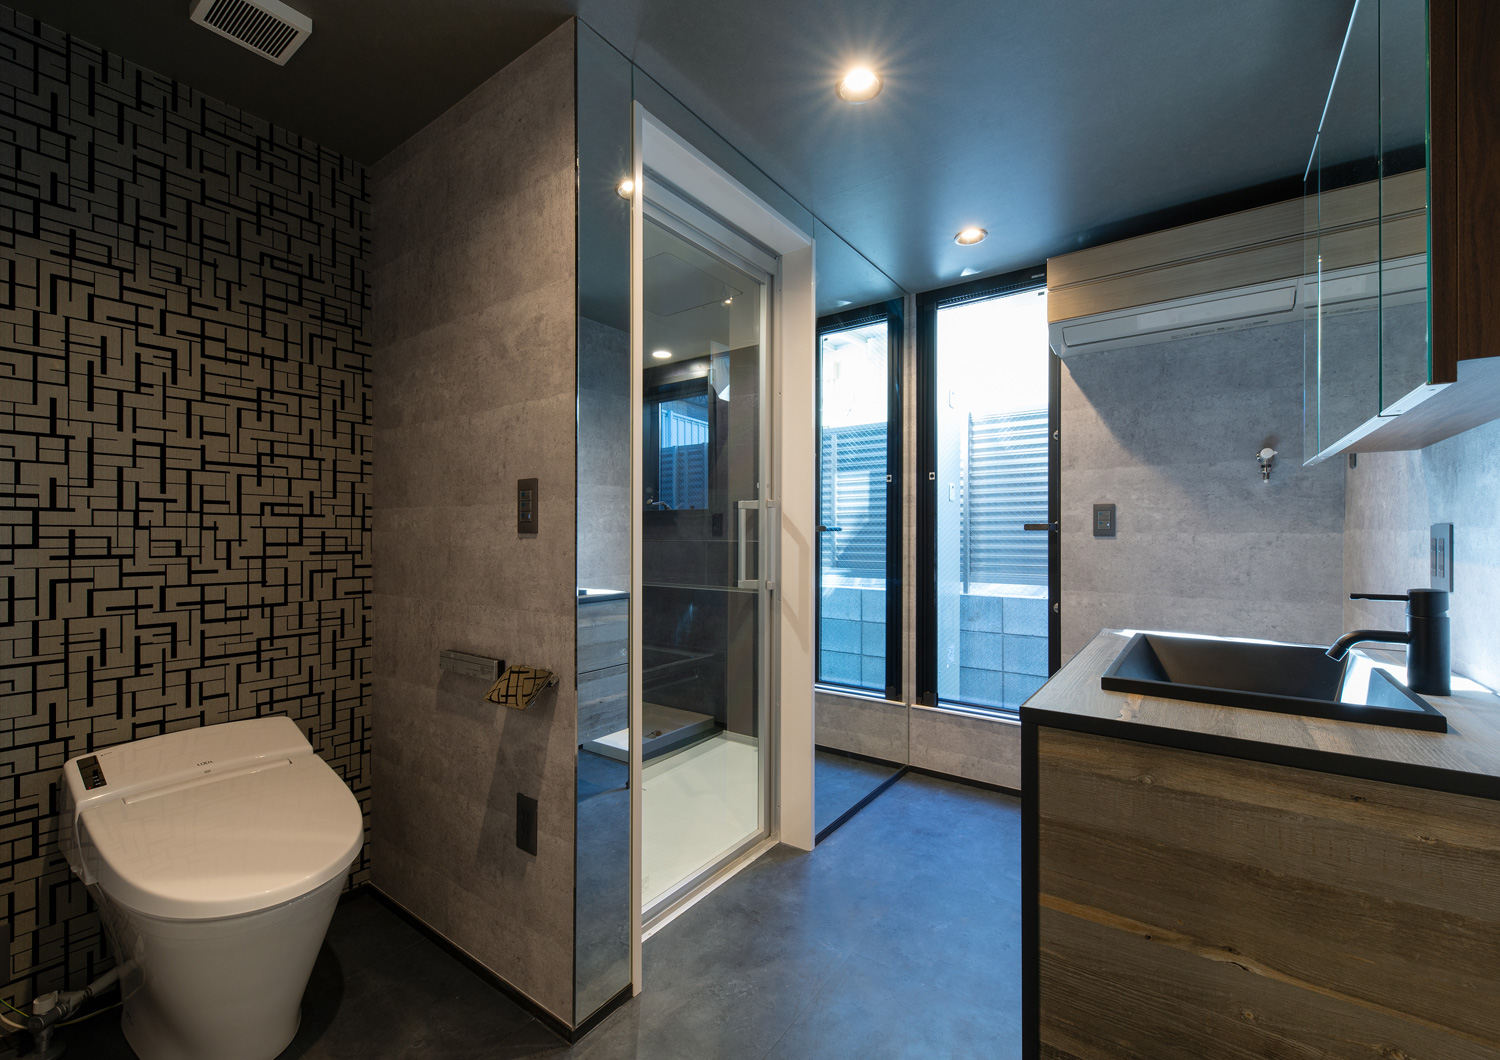 洗面所と脱衣所とトイレが一体となった空間・デザイン住宅